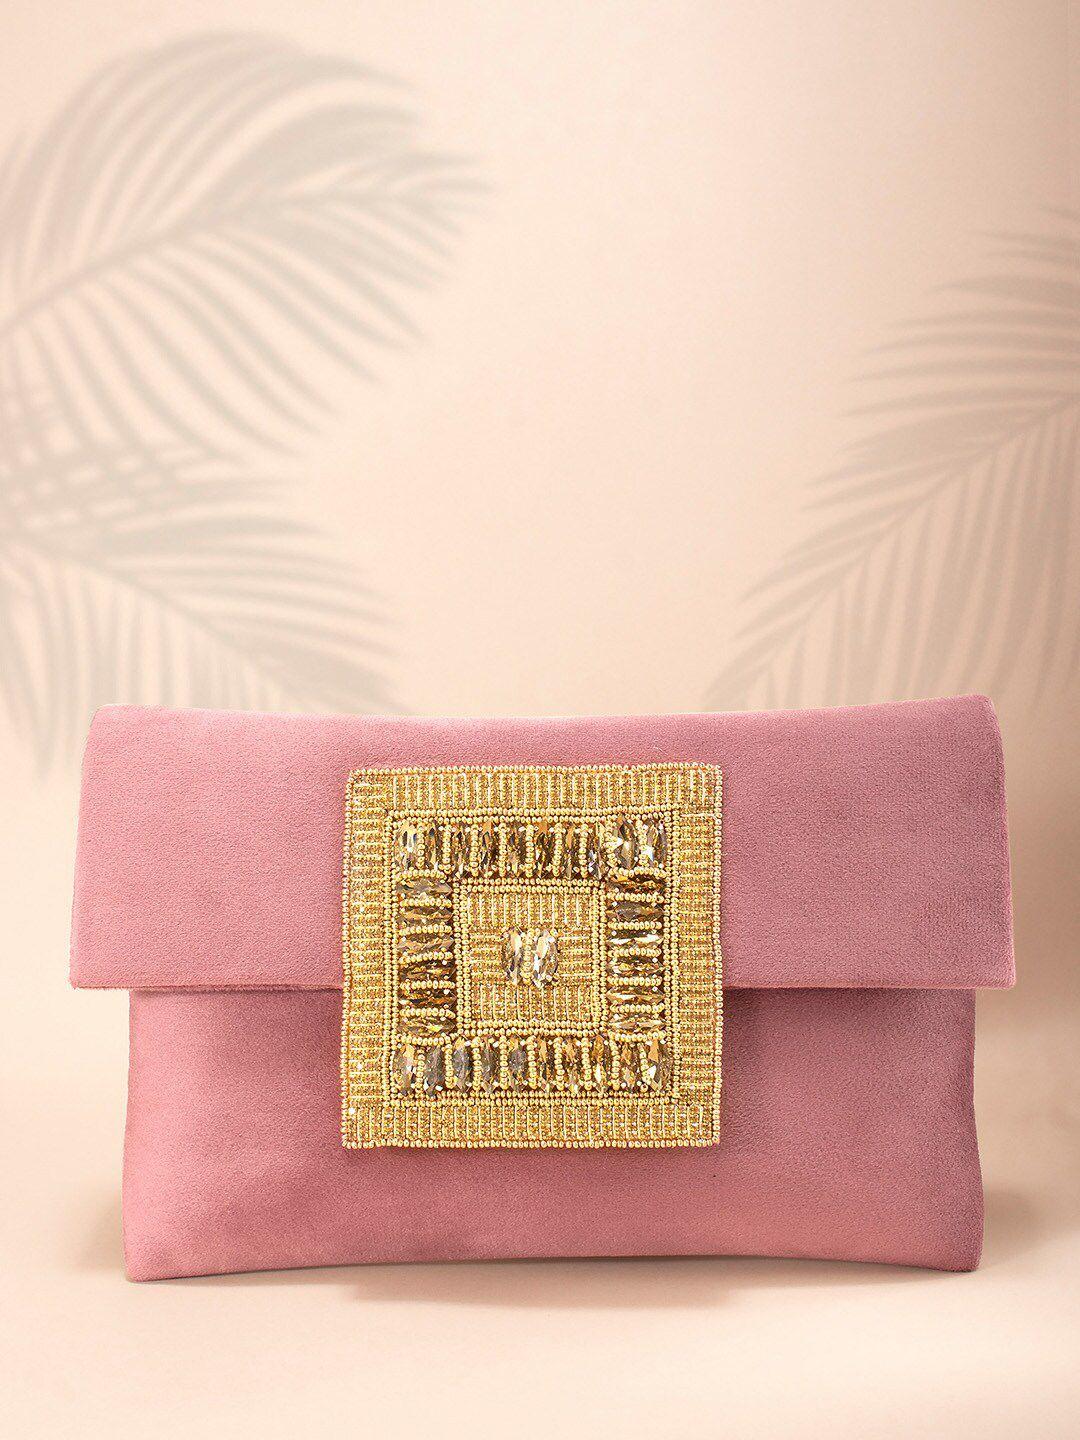 peora pink & gold-toned embellished handmade envelope clutch